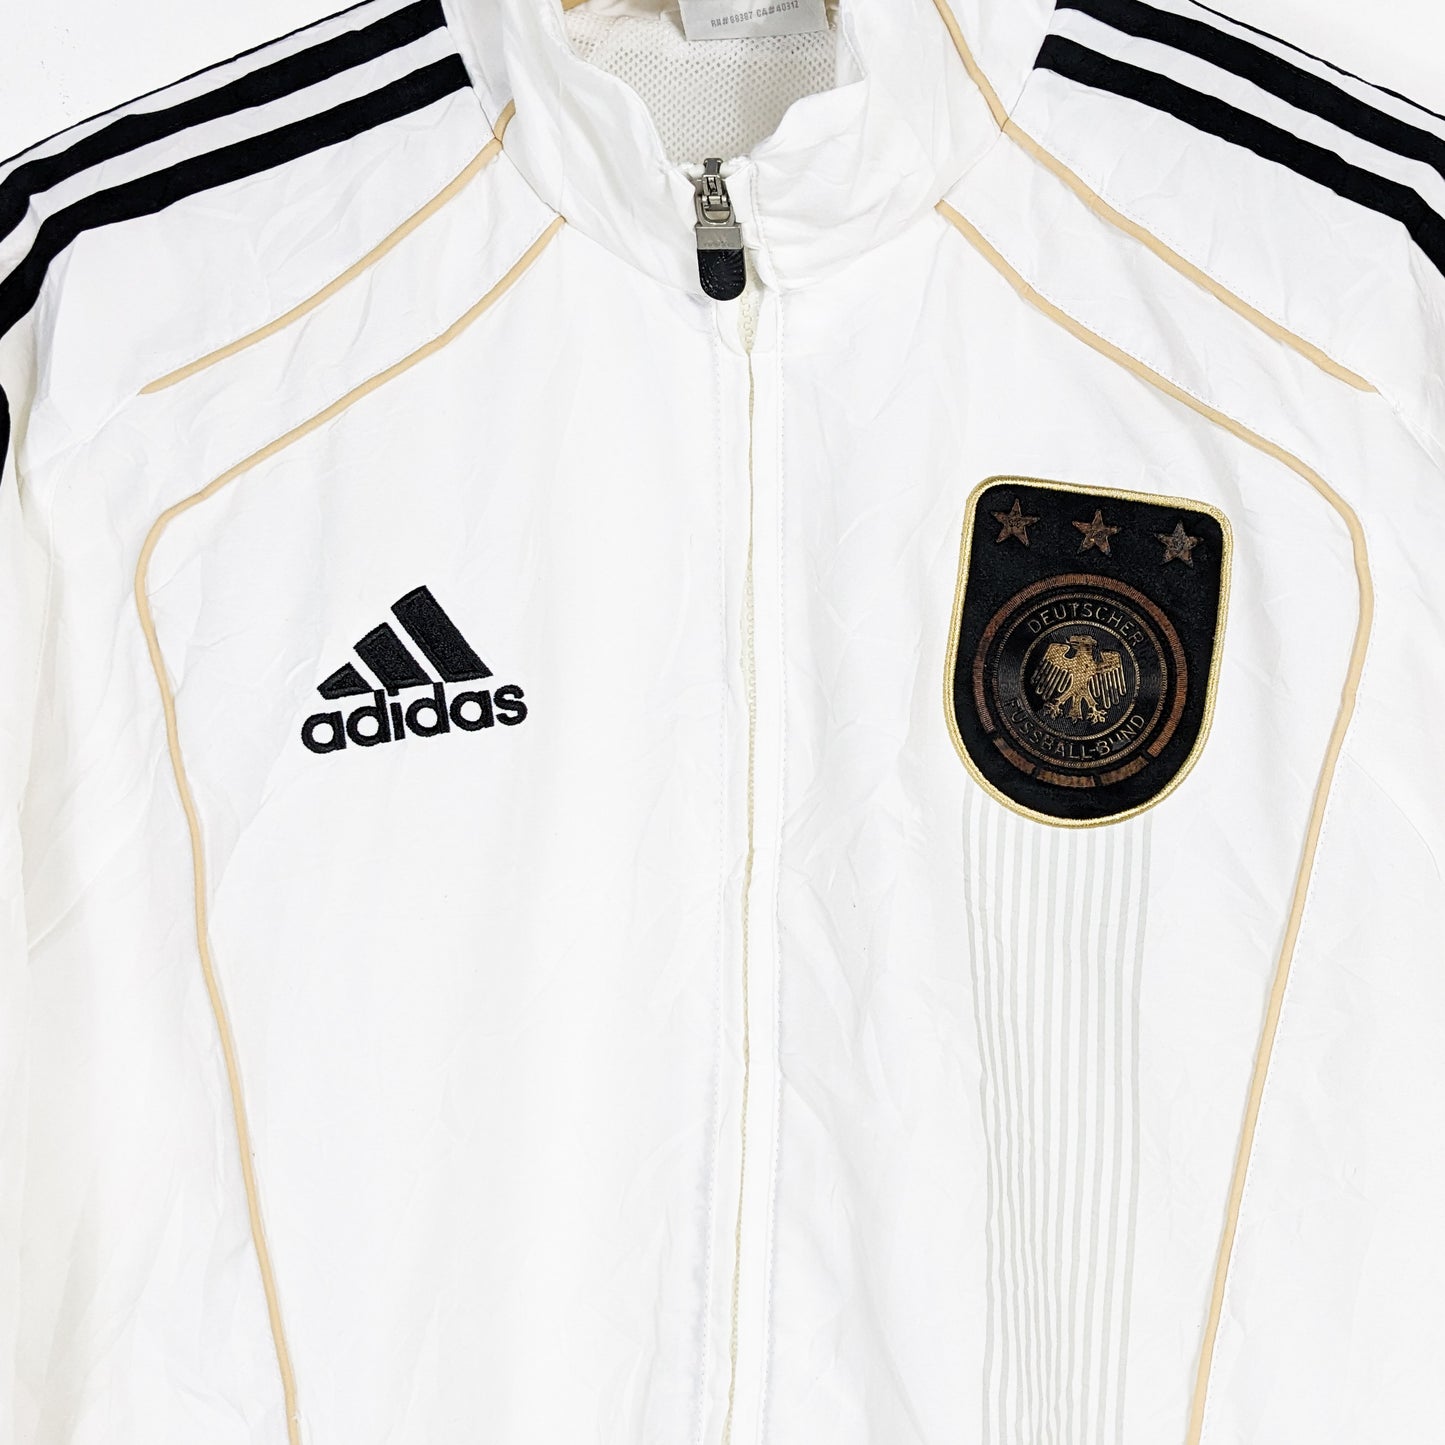 Authentic Germany 2010 Adidas Jacket - Size M